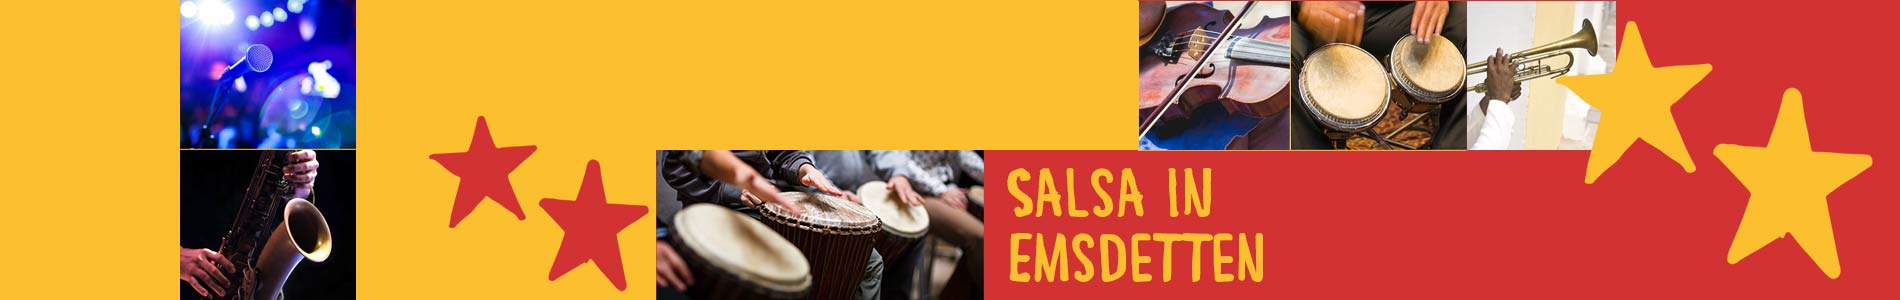 Salsa in Emsdetten – Salsa lernen und tanzen, Tanzkurse, Partys, Veranstaltungen